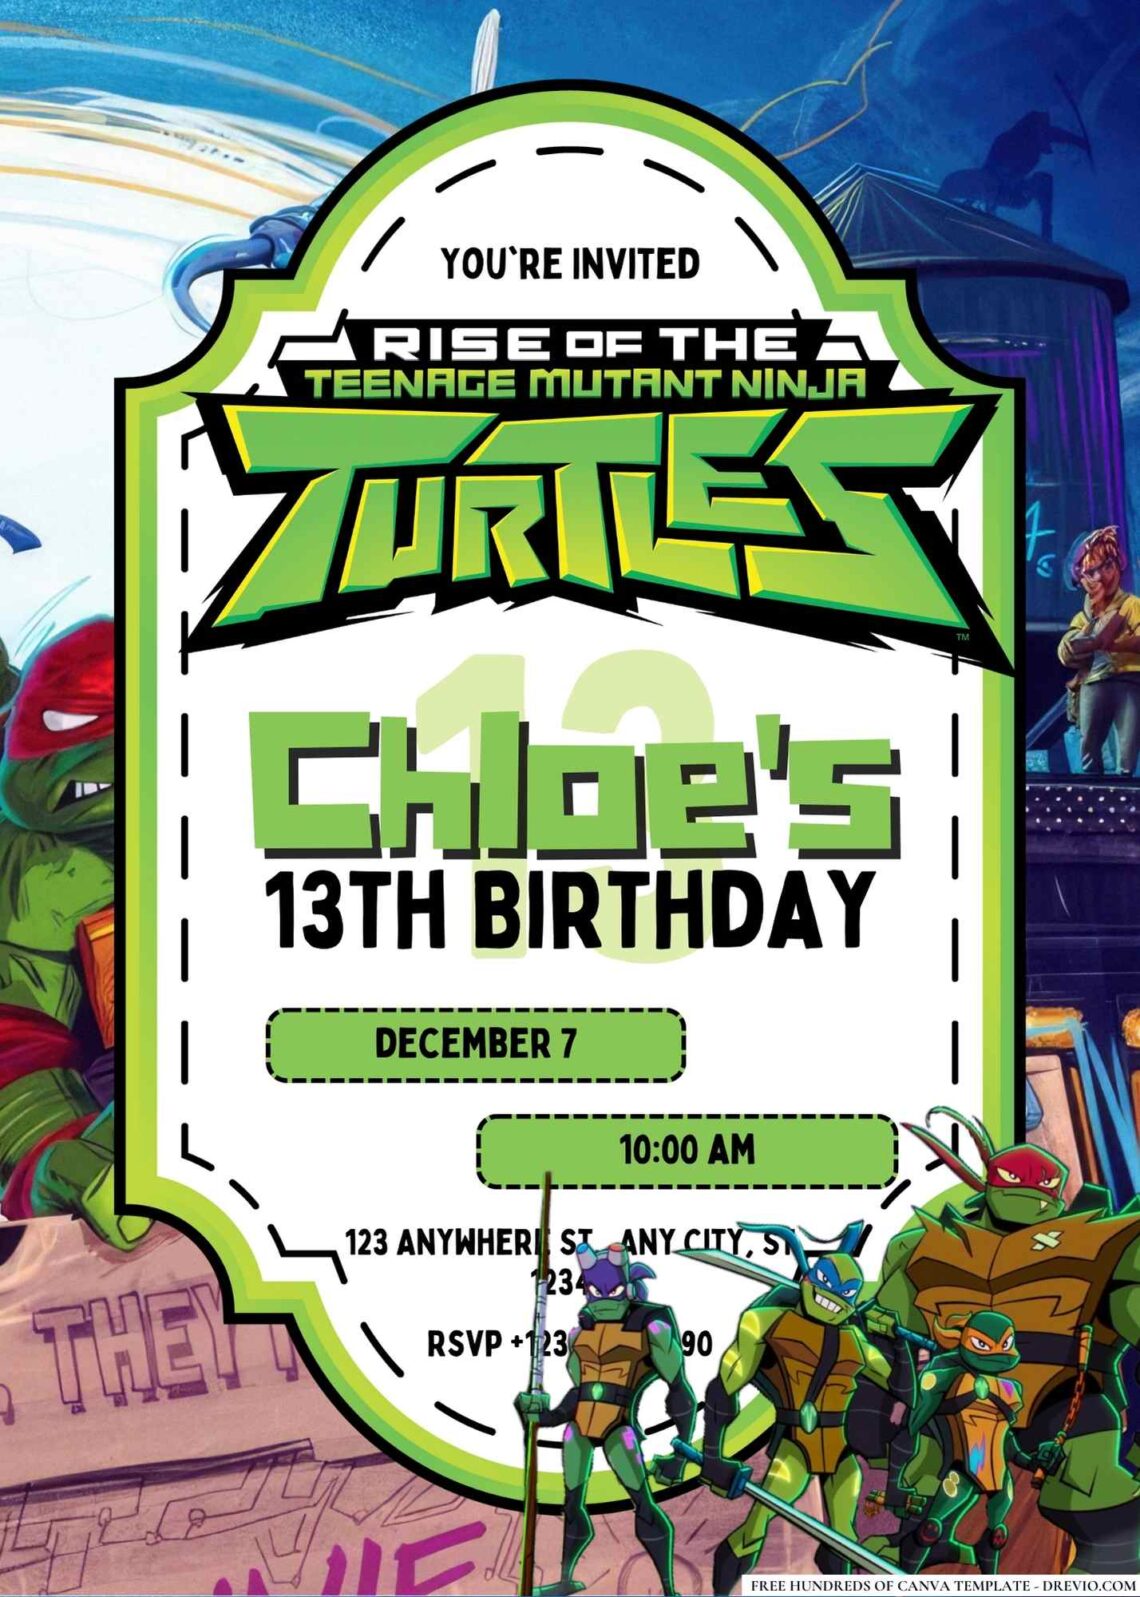 FREE Ninja Turtle Birthday Invitations